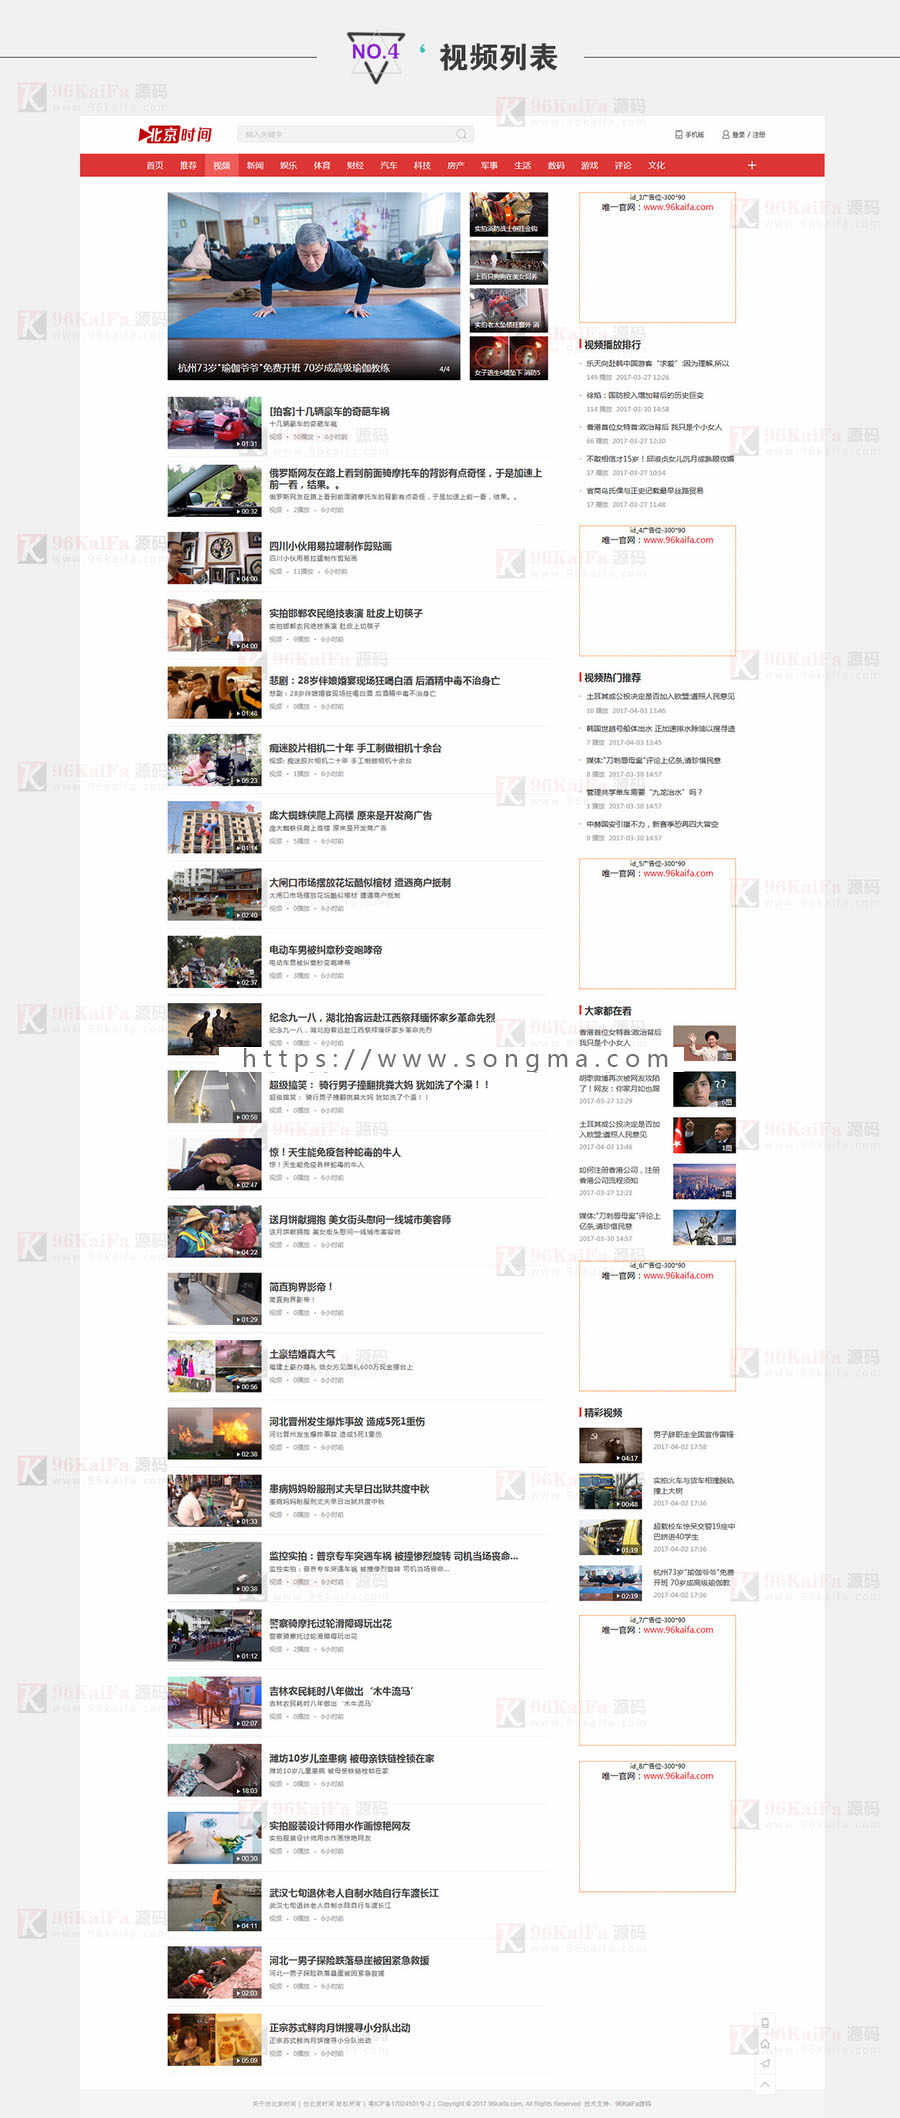 帝国仿北京时间新闻资讯源码手机站会员中心可投稿带火车头采集